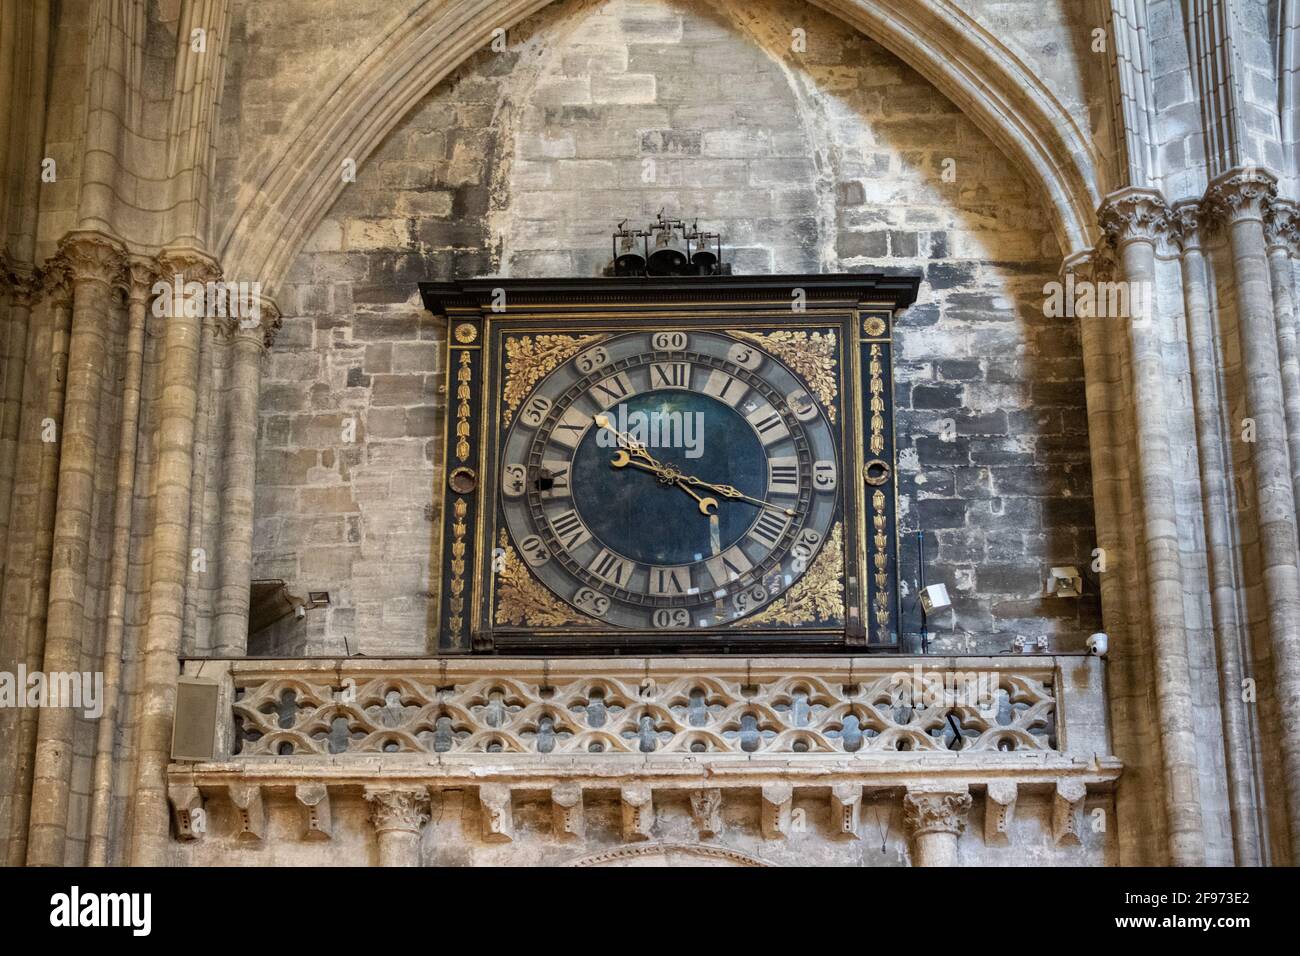 Alte Uhr an der Wand der gotischen Kathedrale von Saint Andre in Bordeaux,  New Aquitaine, Frankreich Stockfotografie - Alamy